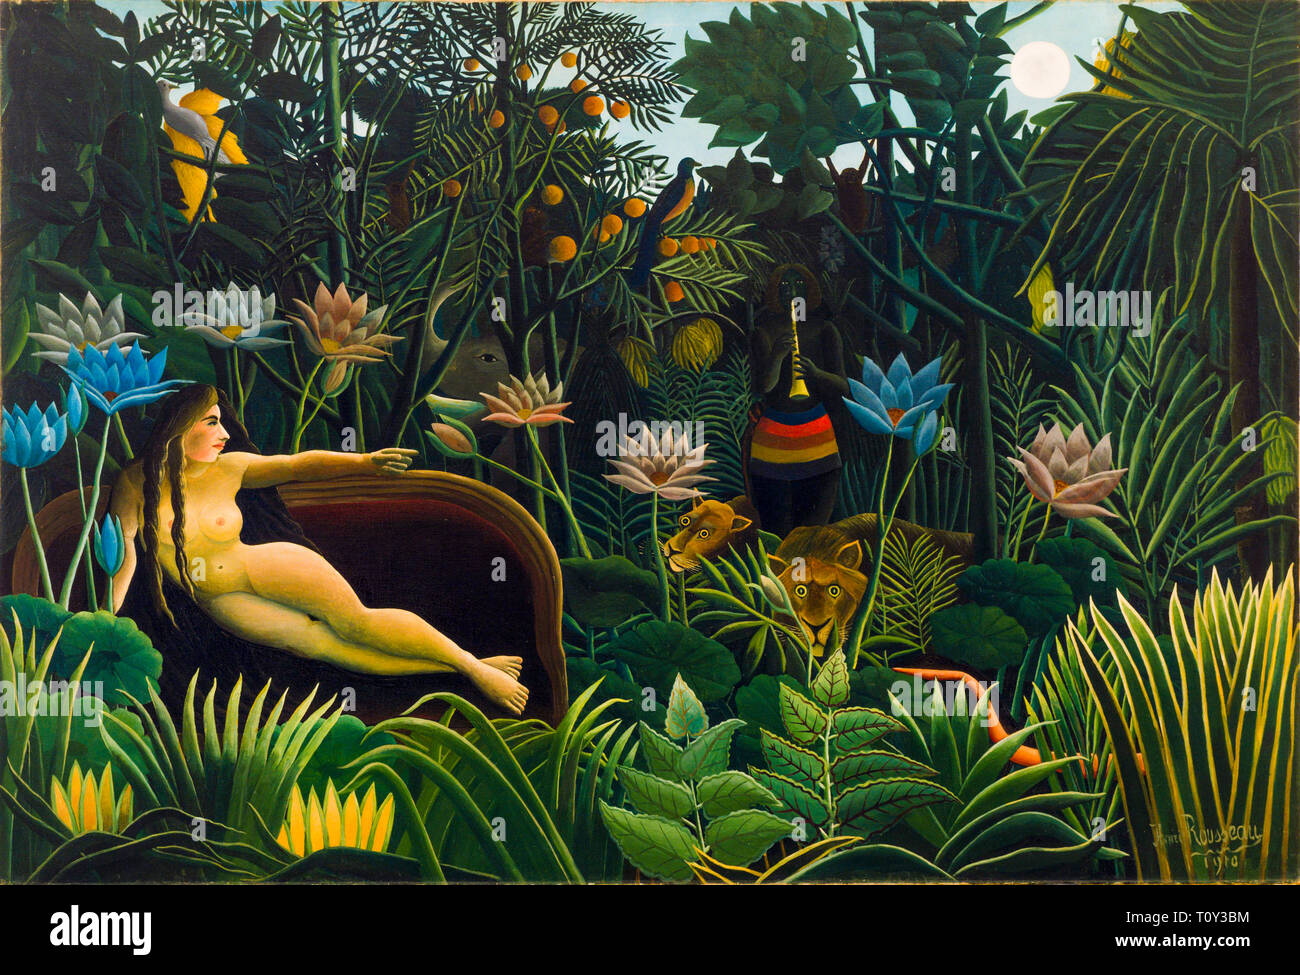 Henri Rousseau, le rêve, peinture post-impressionniste, 1910 Banque D'Images